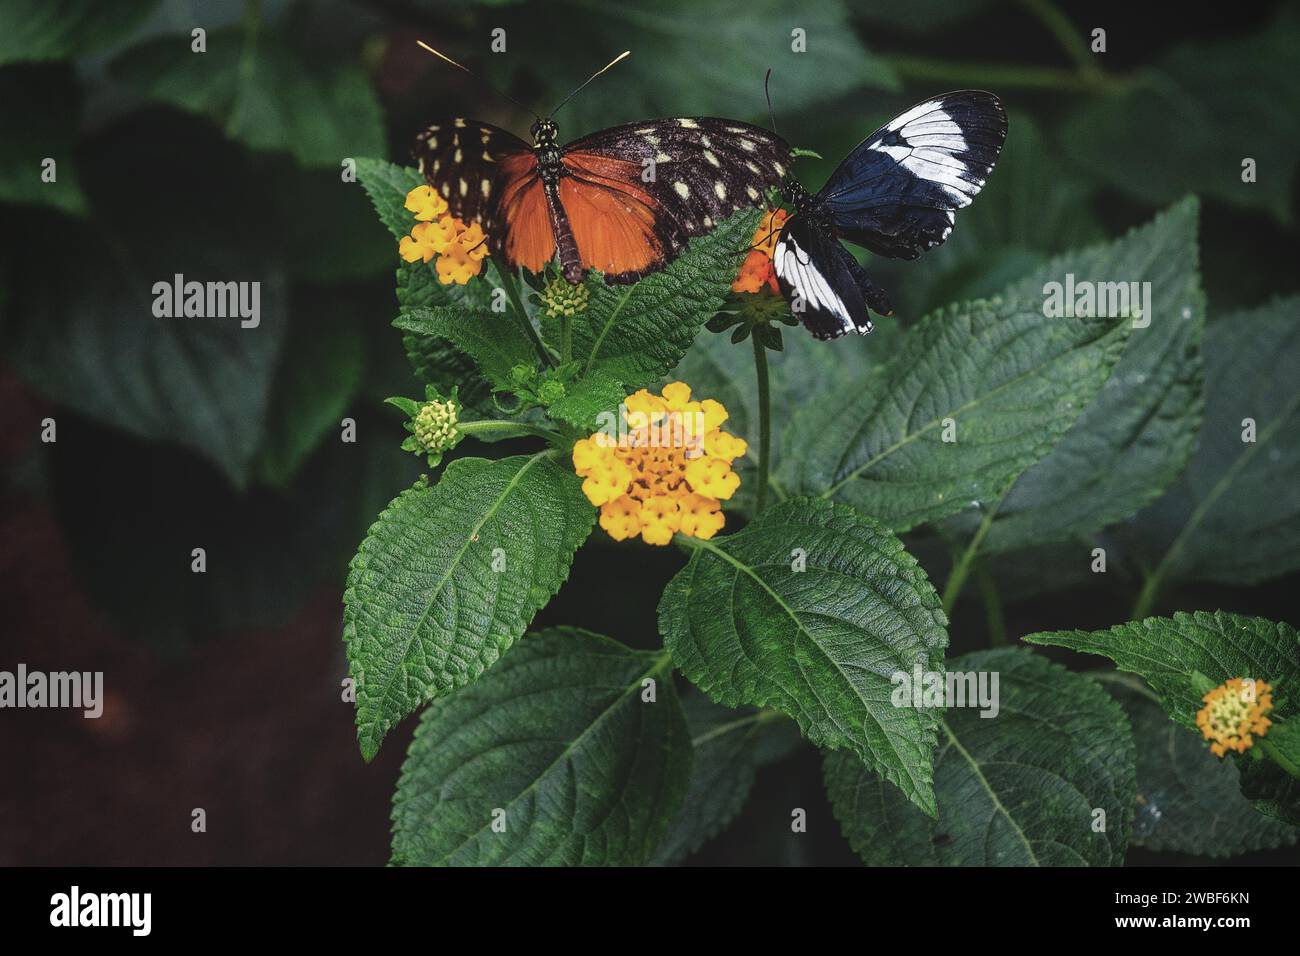 Un papillon orange-noir et un papillon noir et blanc sur des feuilles à côté de fleurs jaunes, zoo de Krefeld, Krefeld, Rhénanie du Nord-Westphalie, Allemagne Banque D'Images